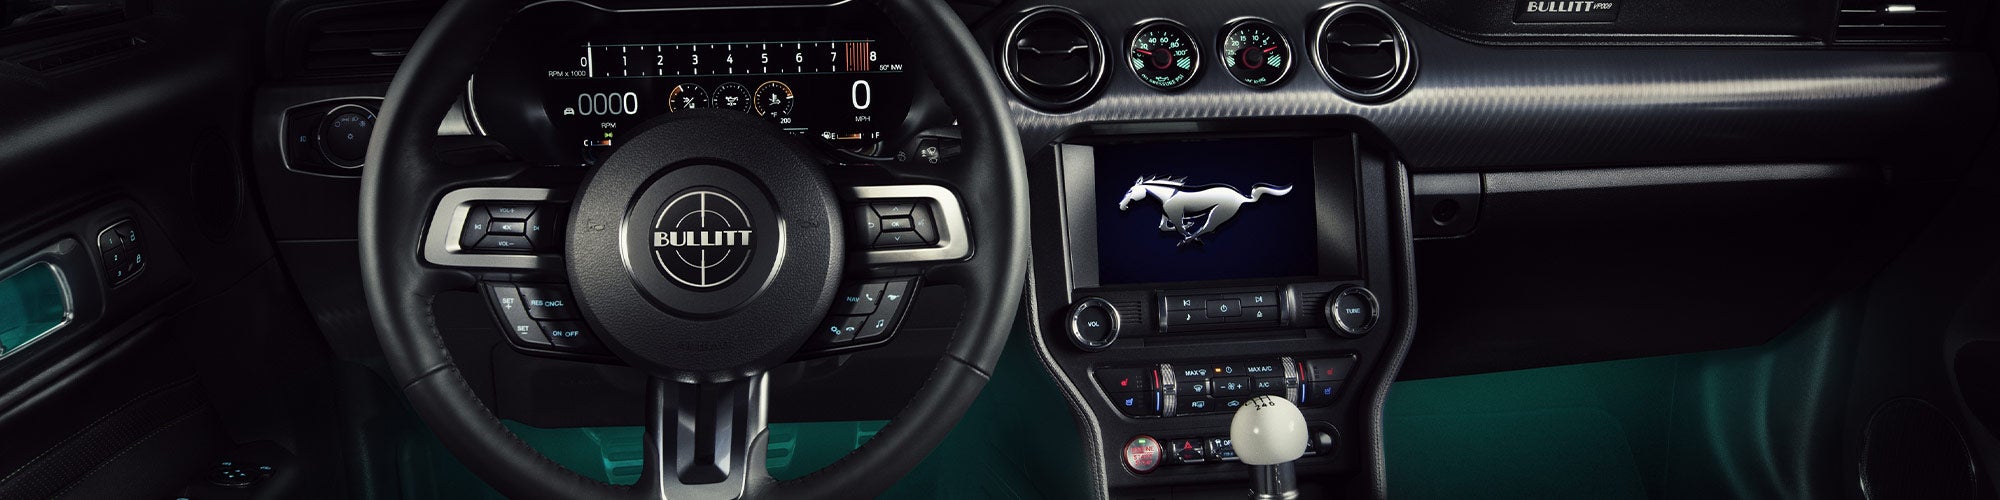 2020 Ford Mustang BULLITT Interior